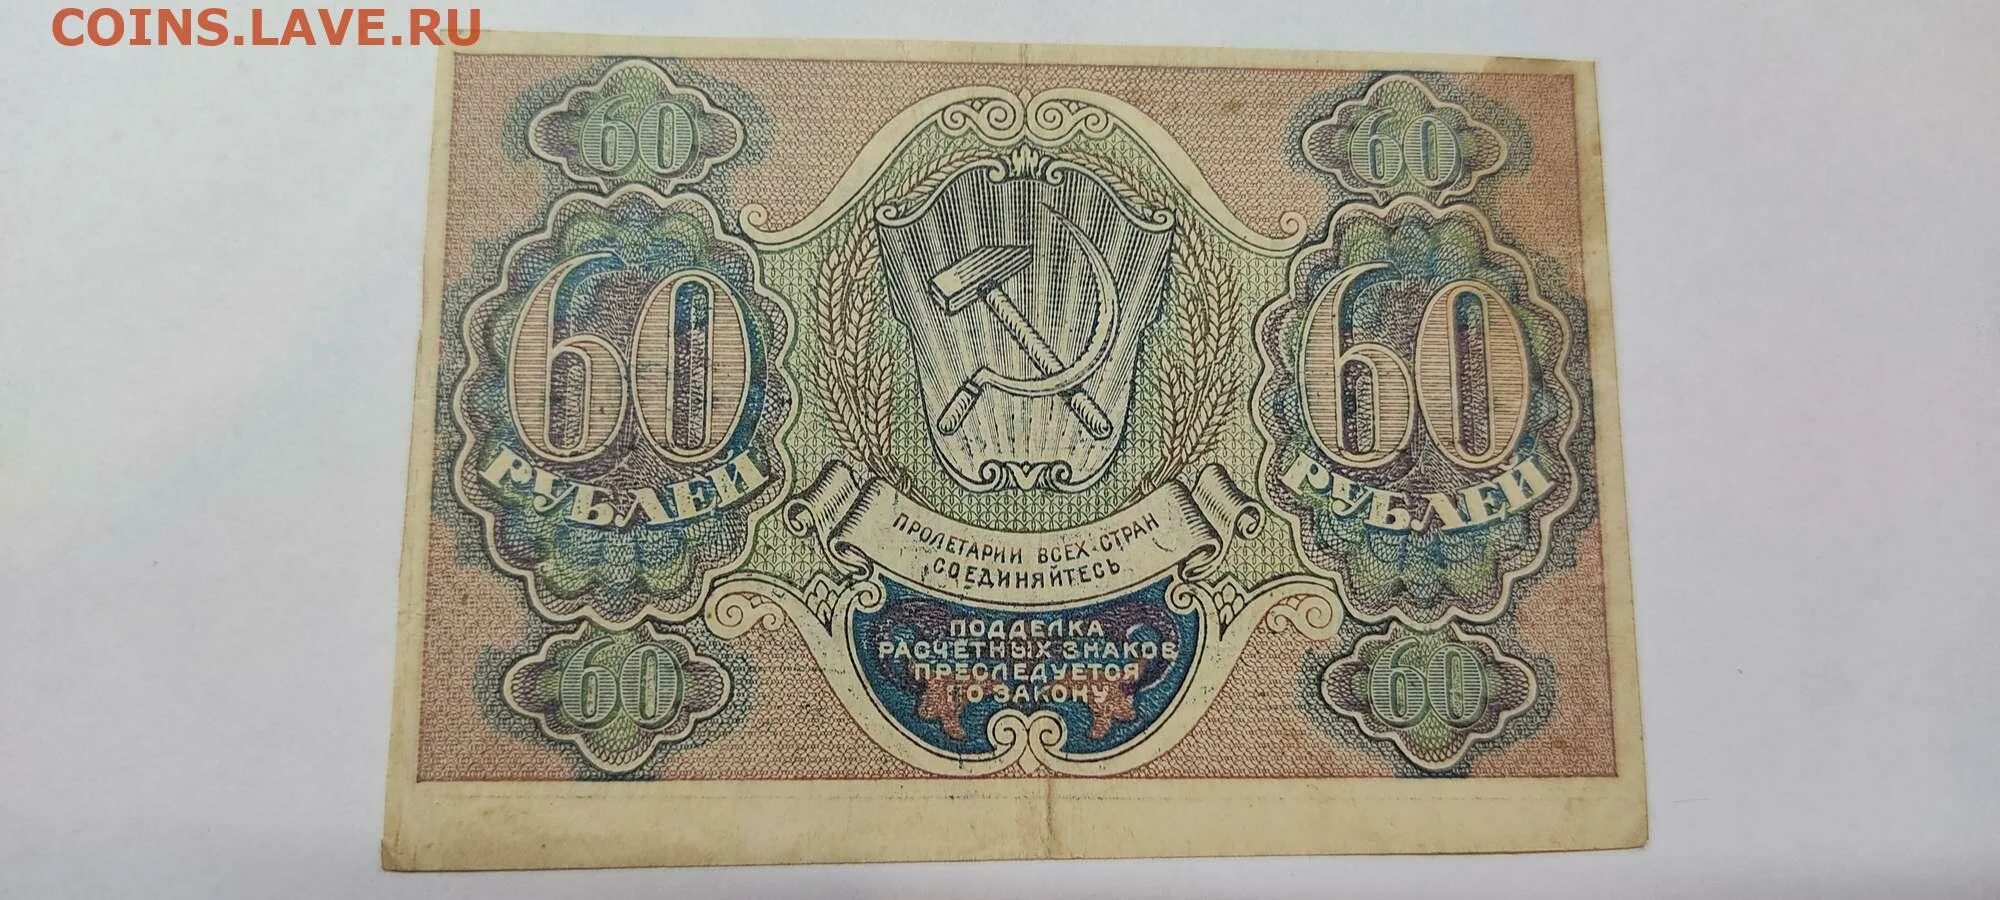 60 Рублей. Расчетный знак 60 рублей. Рубли в 60-х годах XIX В. 60 Рублей фото.